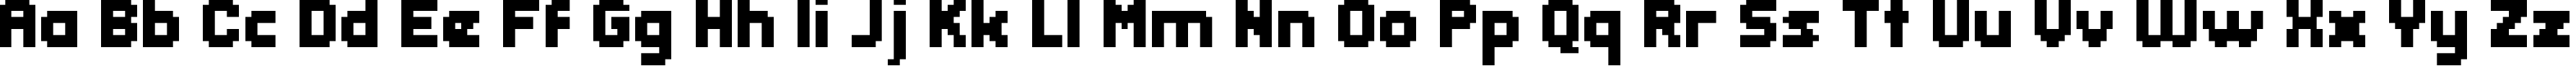 Пример написания английского алфавита шрифтом header 08_65